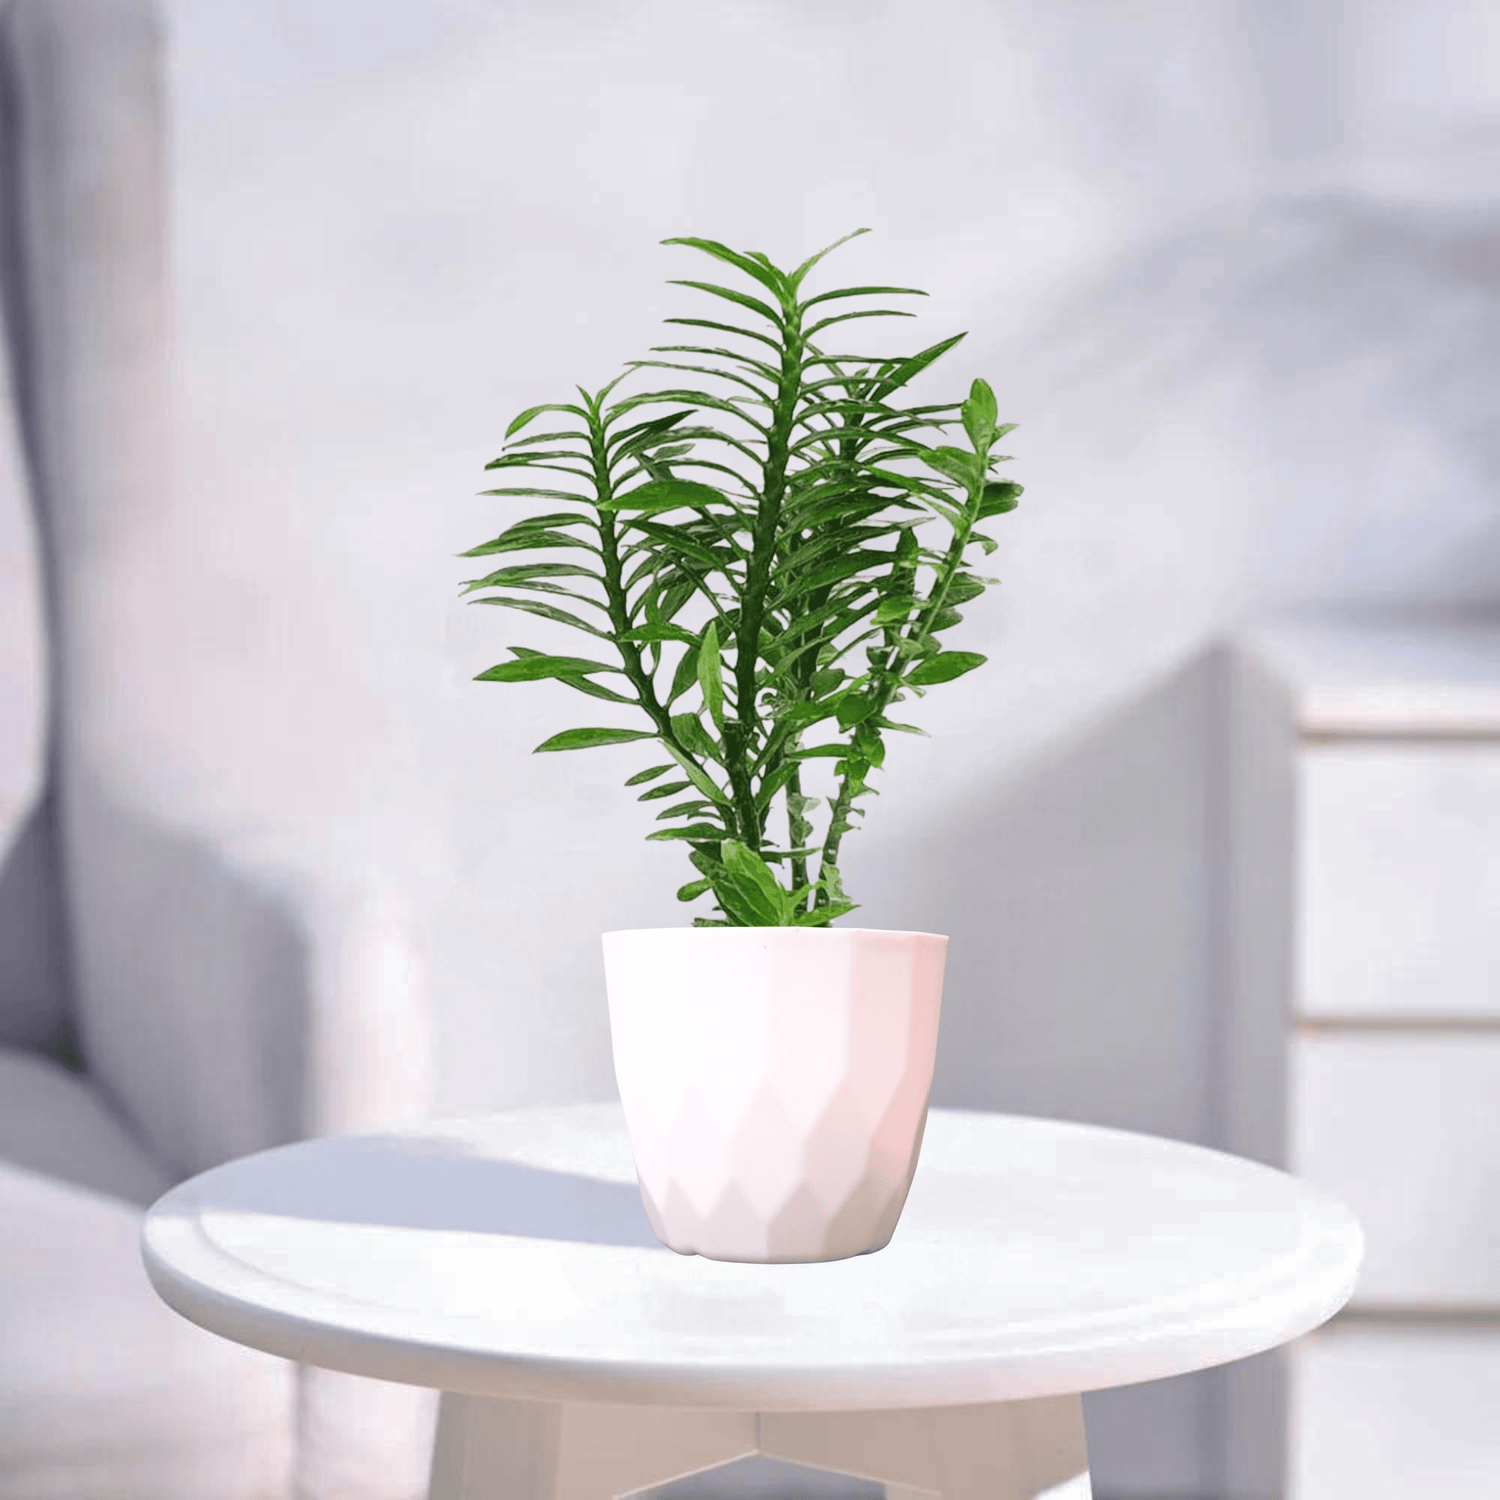 Pedilanthus Green | Indoor Plant